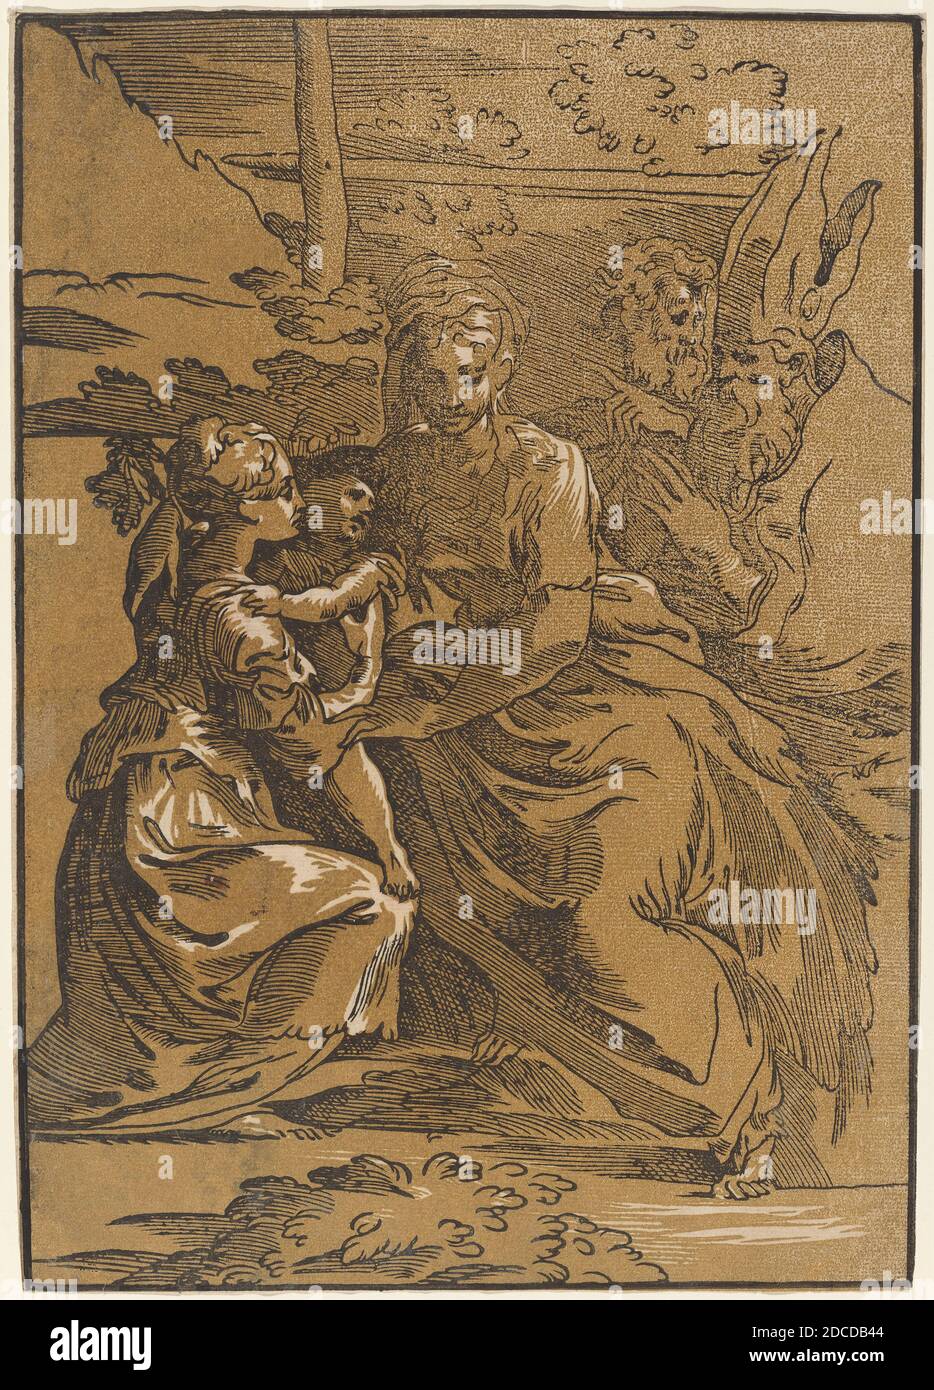 Antonio da Trento, (artiste), Italien, c. 1508 - 1550 ou après, Parmigianino, (artiste après), Parmese, 1503 - 1540, la Sainte famille avec deux saints, chiaroscuro coupe de bois imprimée à partir de deux blocs: Bloc de ligne noire et bloc de ton jaune-brun, feuille: 31.2 x 21.8 cm (12 5/16 x 8 9/16 po Banque D'Images